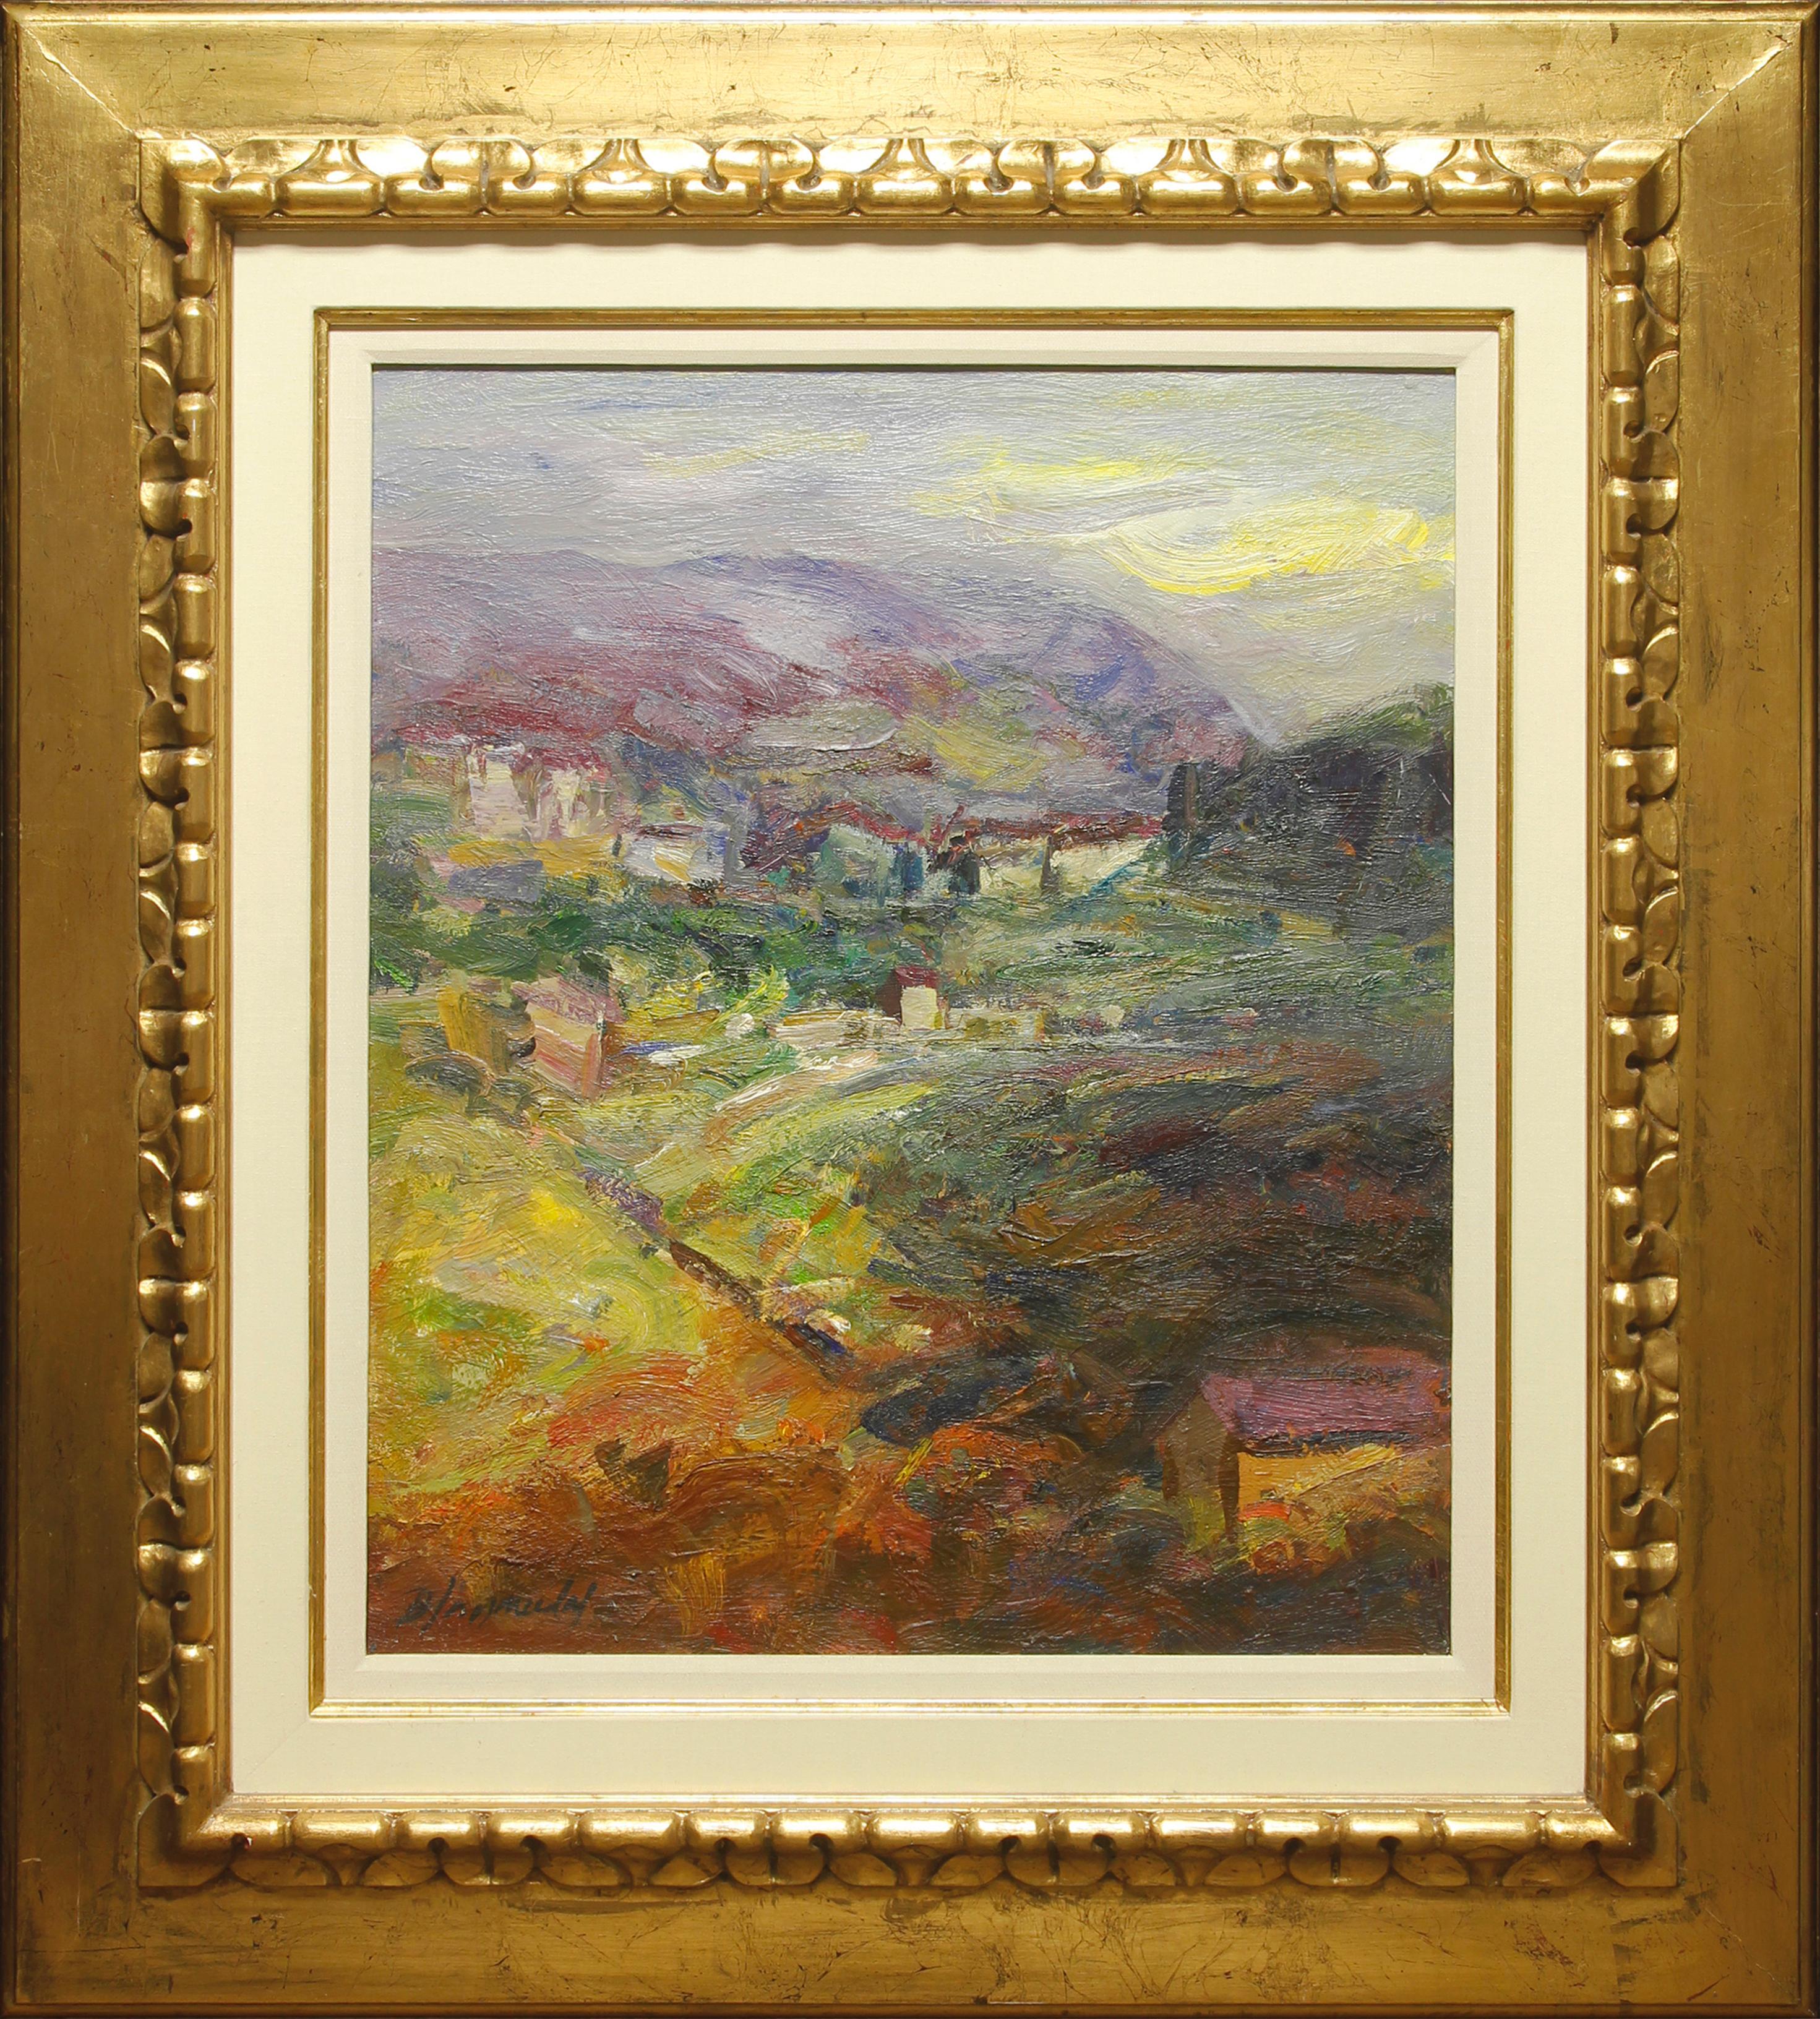 Benet Sarsanedas Landscape Painting - "Returning Home" by Benet Sarsaneda 26 x 21 inch Oil on Canvas 